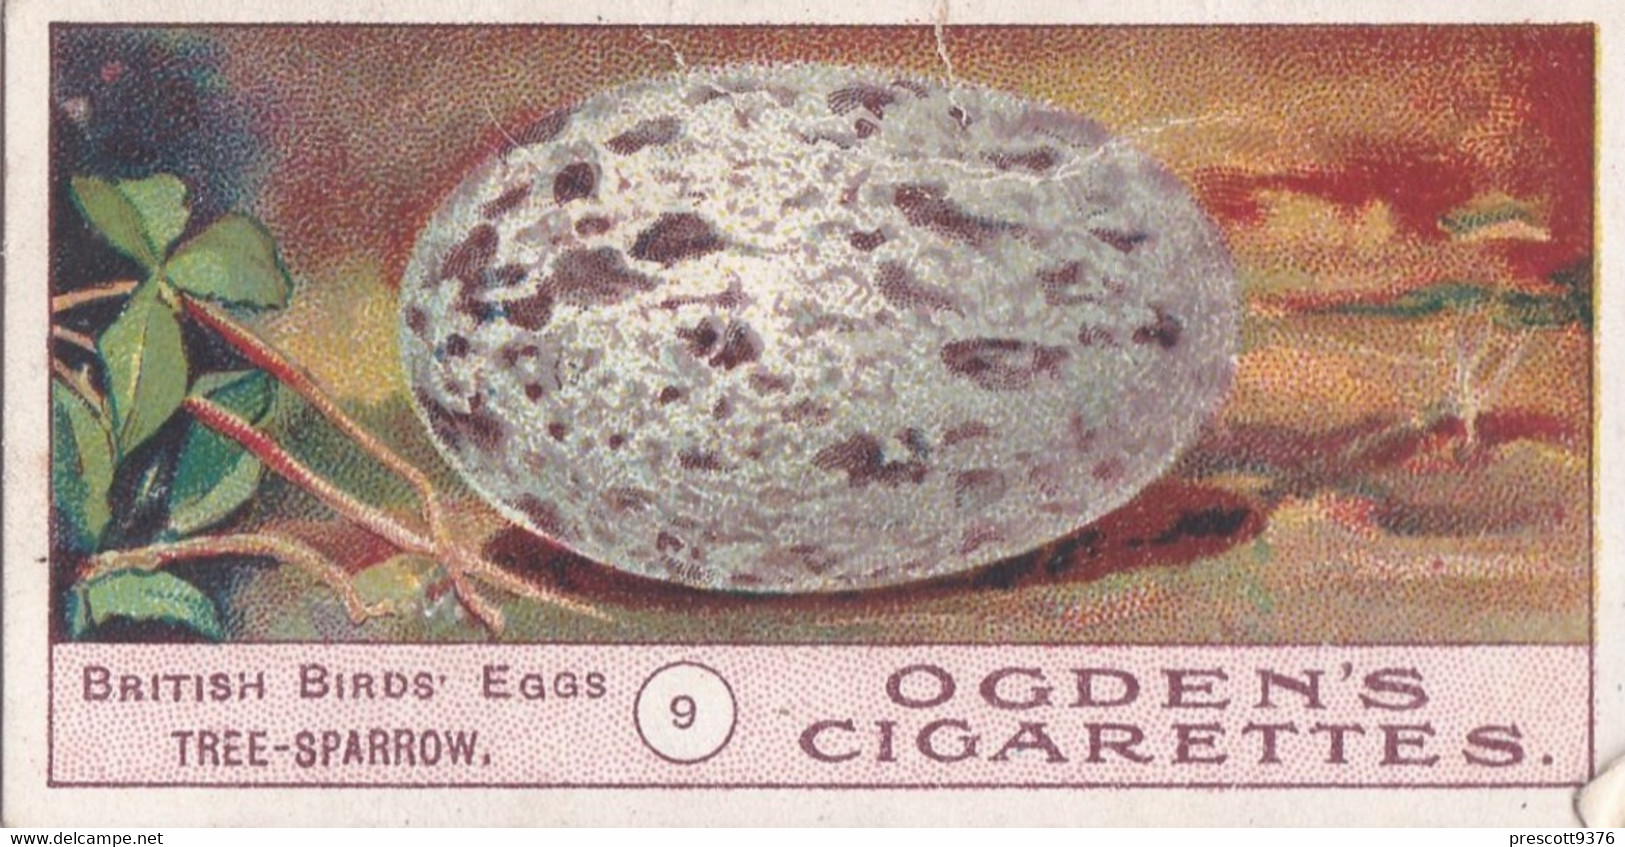 Birds Eggs 1908  - Ogdens  Cigarette Card - Original - Antique - 9 Tree Sparrow - Ogden's